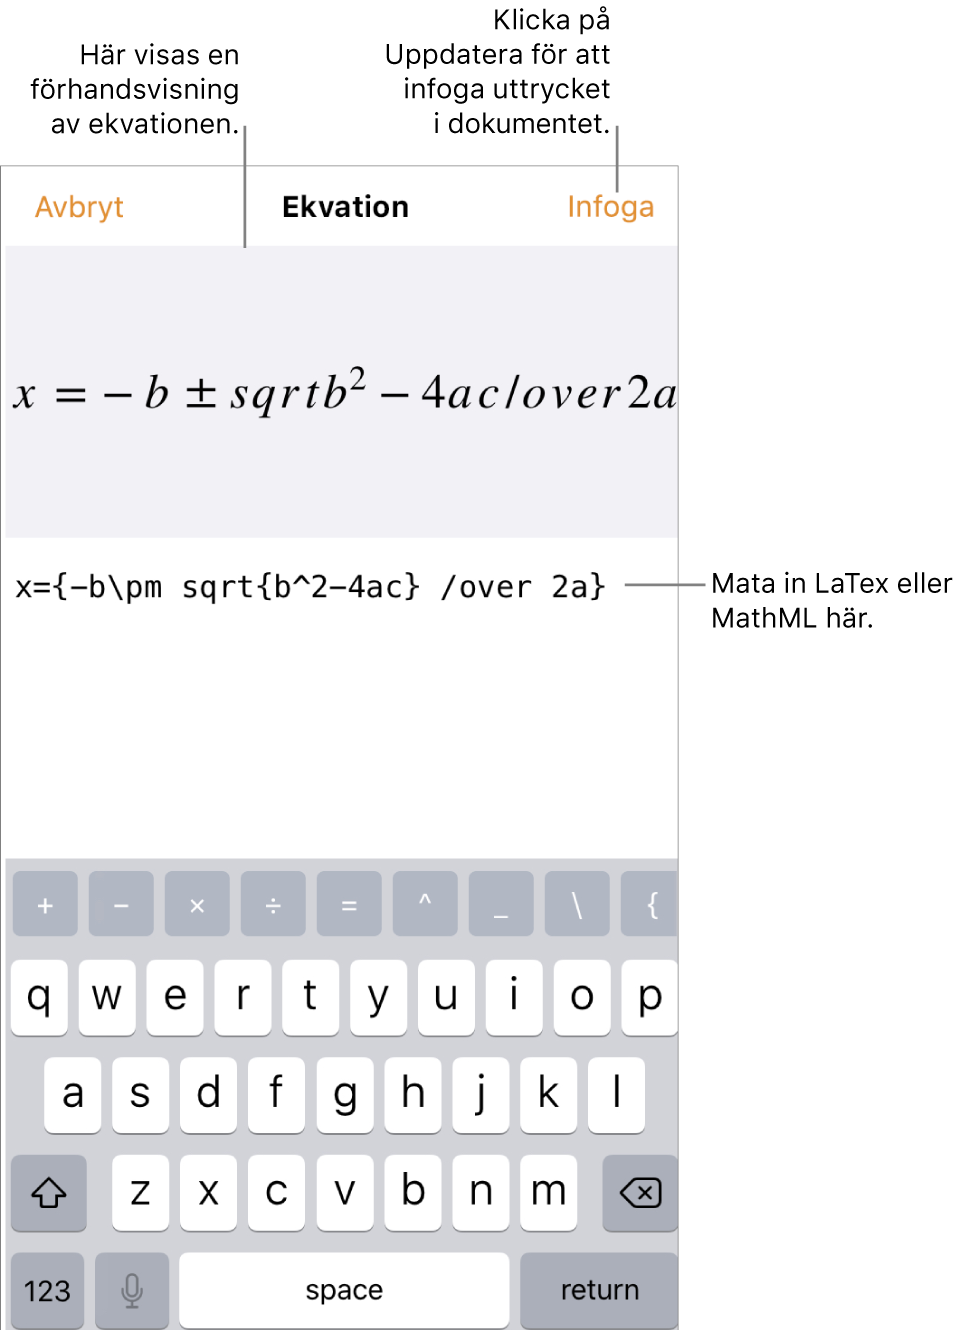 Dialogrutan Ekvation med den kvadratiska formeln som skrivits med LaTeX-kommandon och en förhandsvisning av formeln ovanför den.